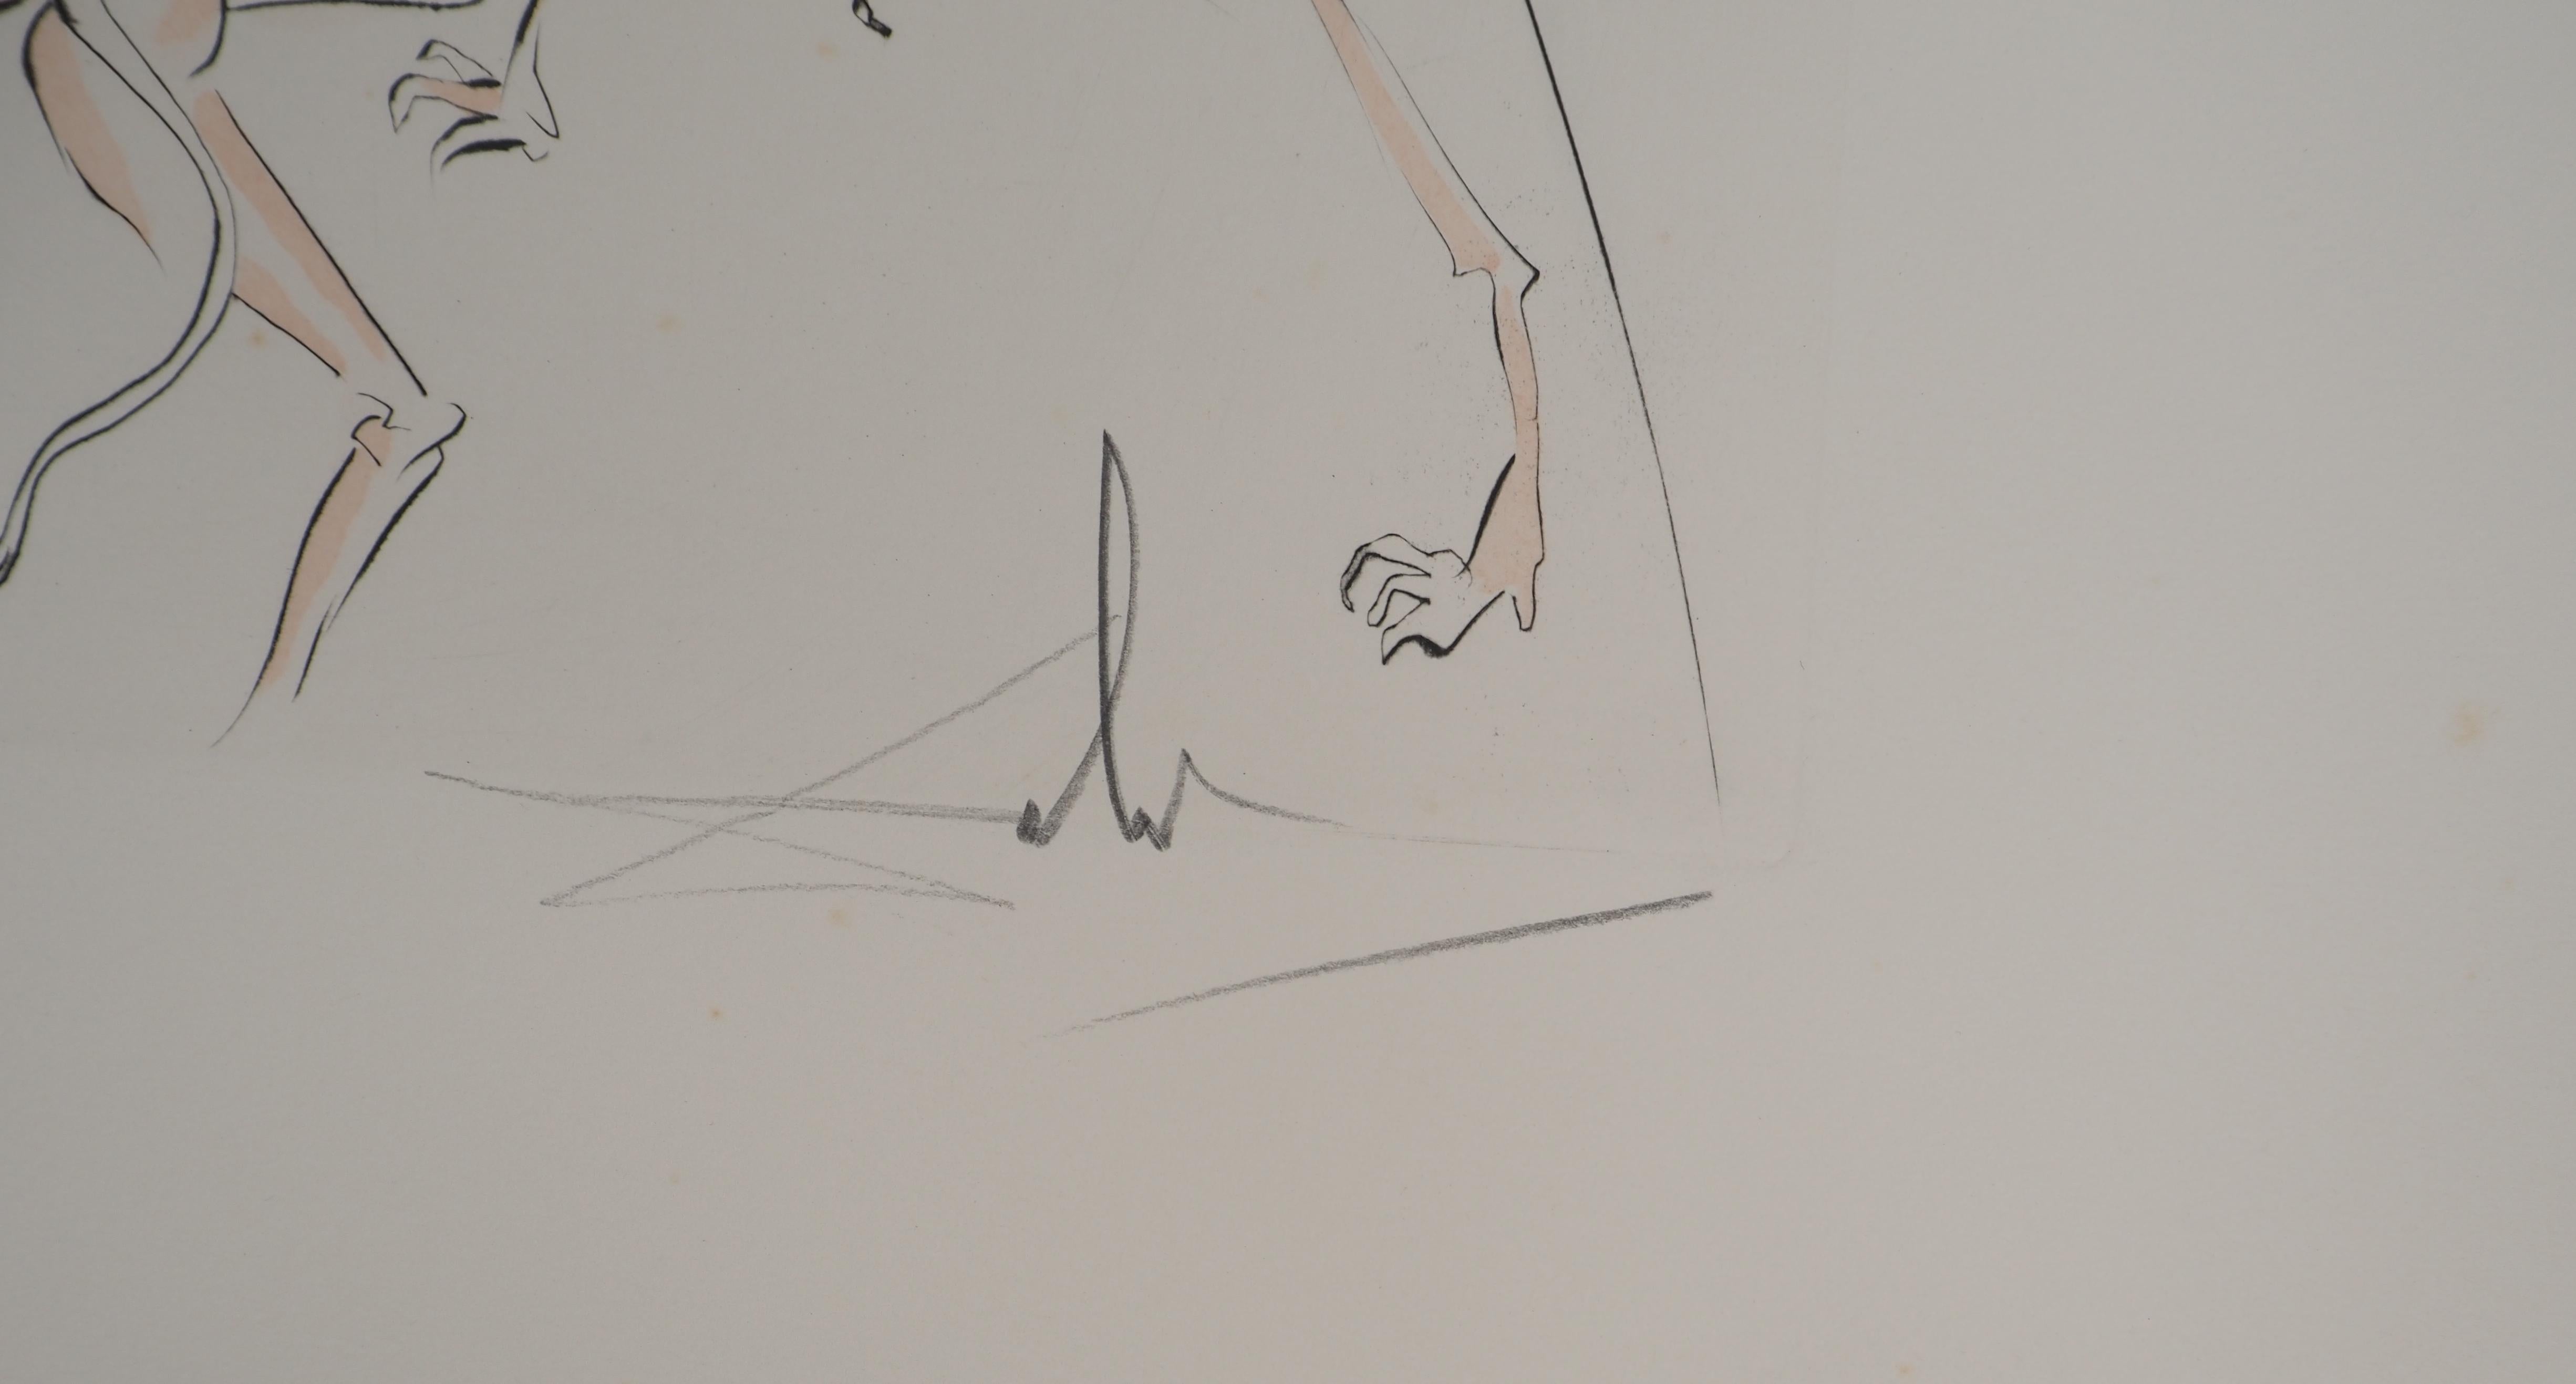 Éléphant surréaliste, gravure originale, signée à la main, 1974 - Print de Salvador Dalí